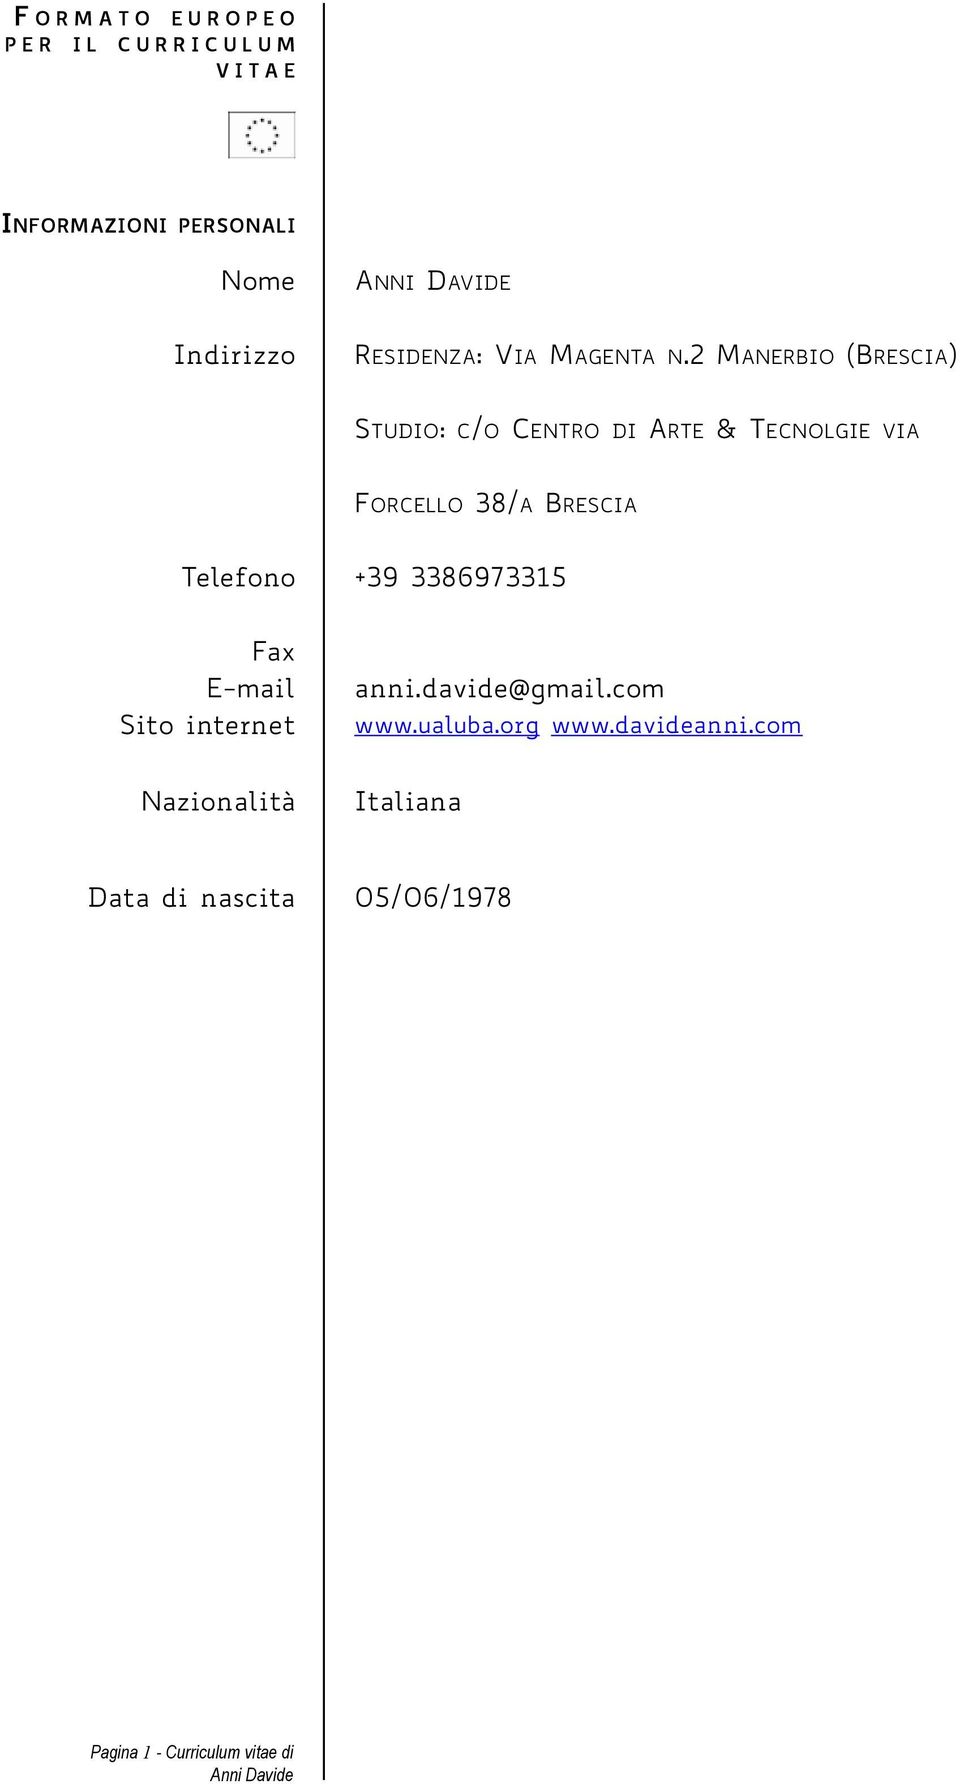 2 MANERBIO (BRESCIA) STUDIO: C/O CENTRO DI ARTE & TECNOLGIE VIA FORCELLO 38/A BRESCIA Telefono +39